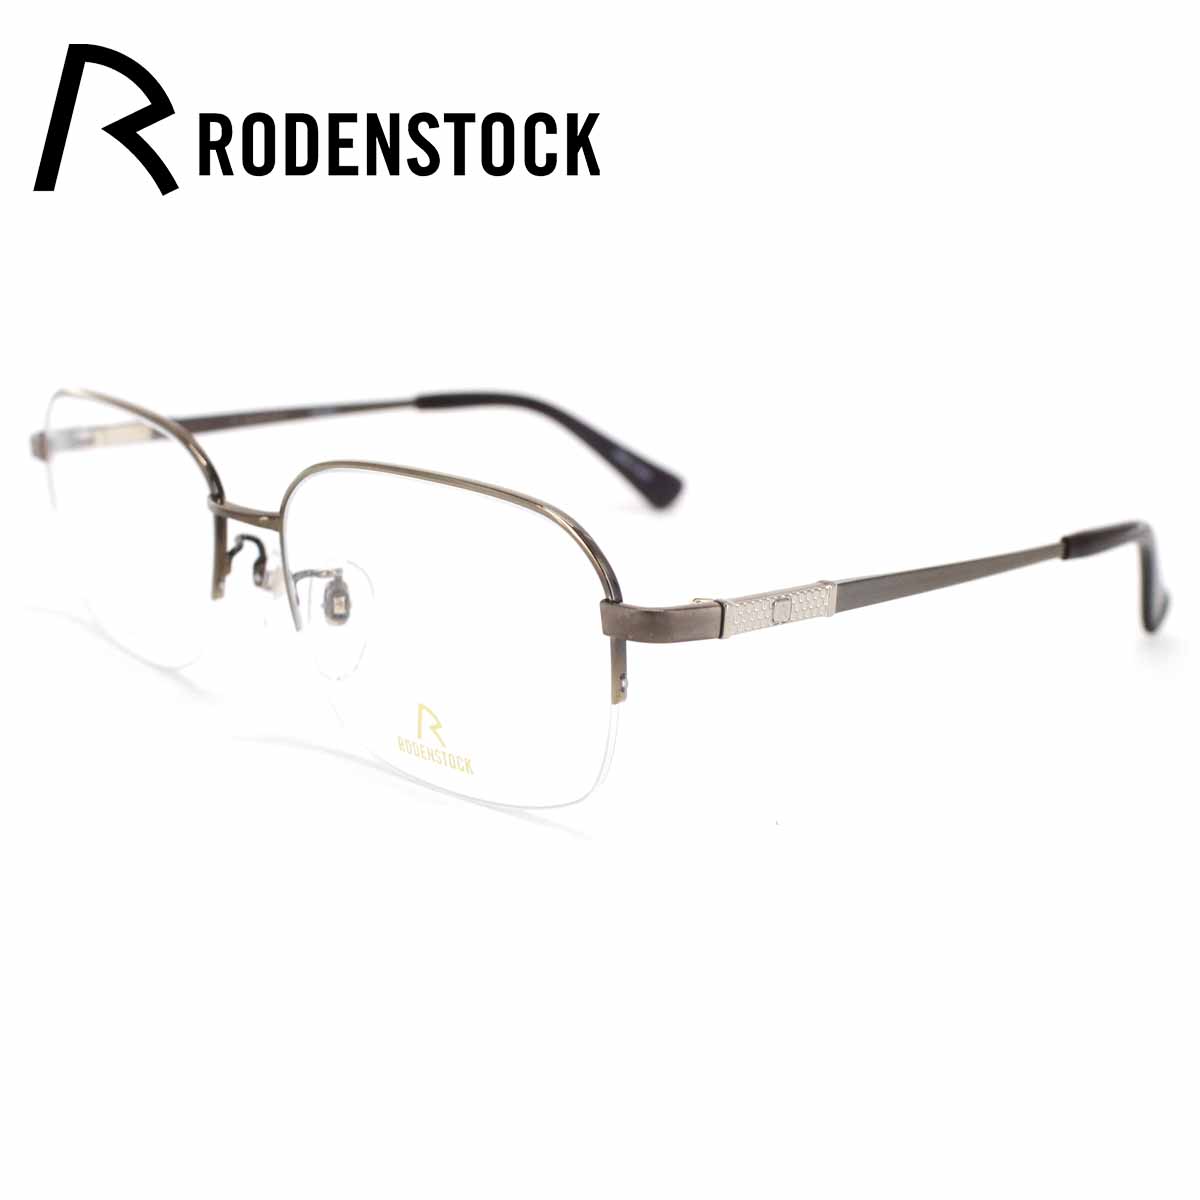 メガネフレーム ローデンストック RODENSTOCK R0030 D56 GOLD 56サイズ ウェリントン ナイロール バネ付きテンプル メンズ 男性 紳士 眼鏡 チタン めがね ブラウンゴールド 送料無料